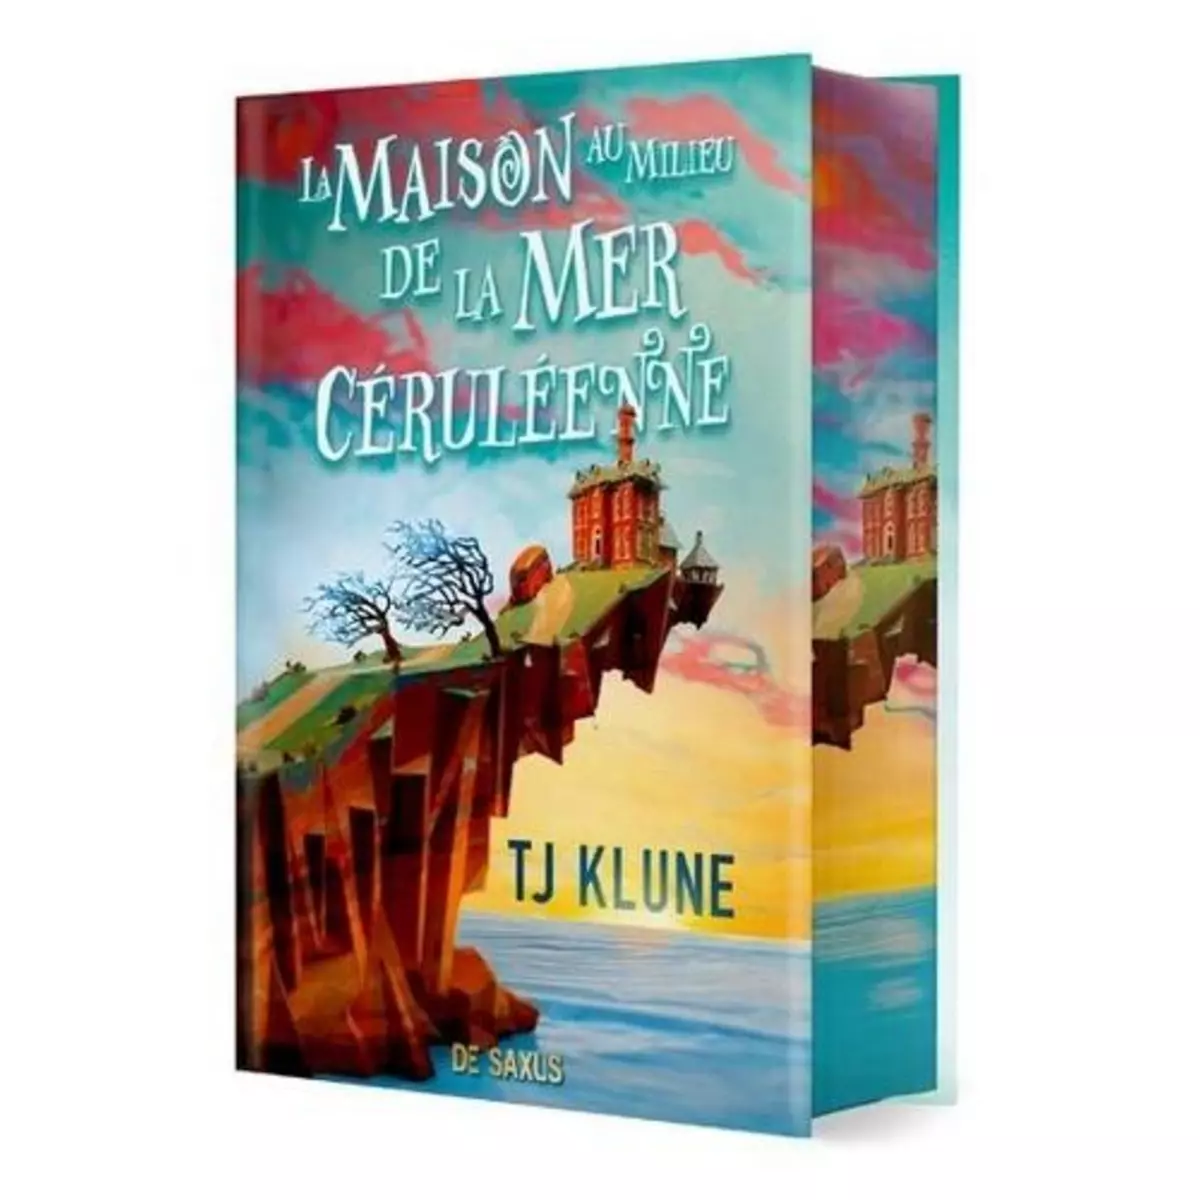  LA MAISON AU MILIEU DE LA MER CERULEENNE. EDITION COLLECTOR, Klune T. J.